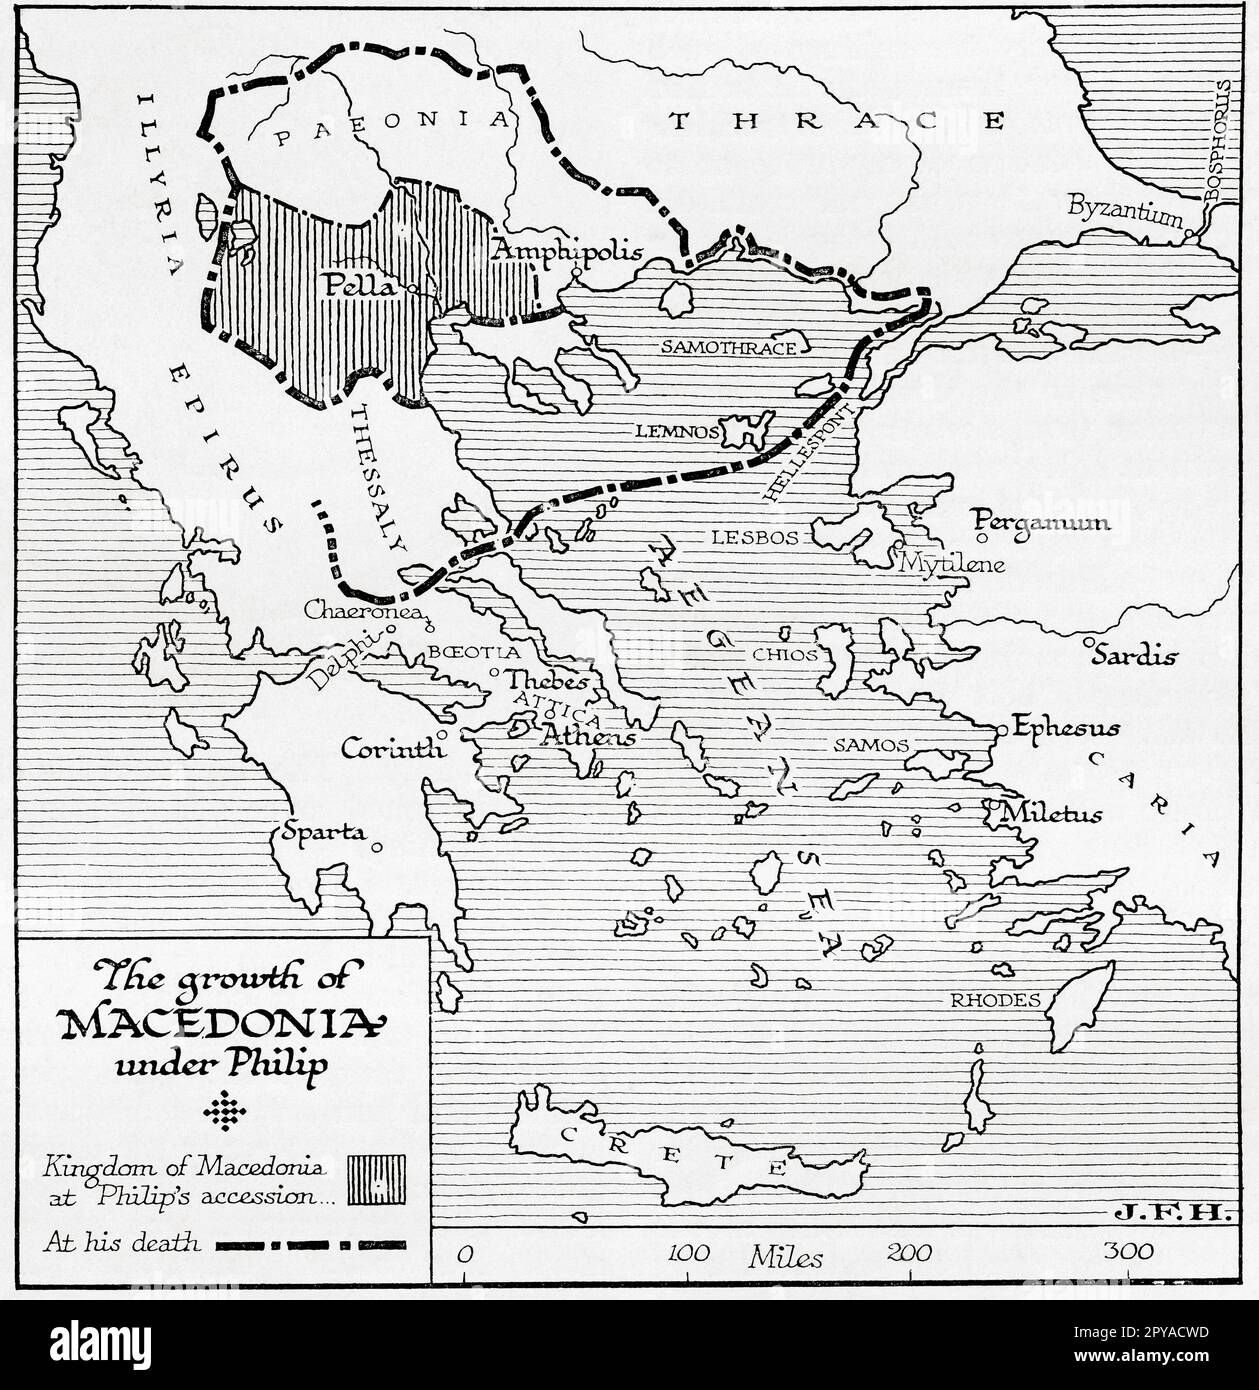 Karte mit dem Wachstum Mazedoniens unter der Herrschaft von Philip II. Von Mazedonien, 382 – 336 v. Chr. Aus dem Buch Outline of History von H.G. Wells, veröffentlicht 1920. Stockfoto